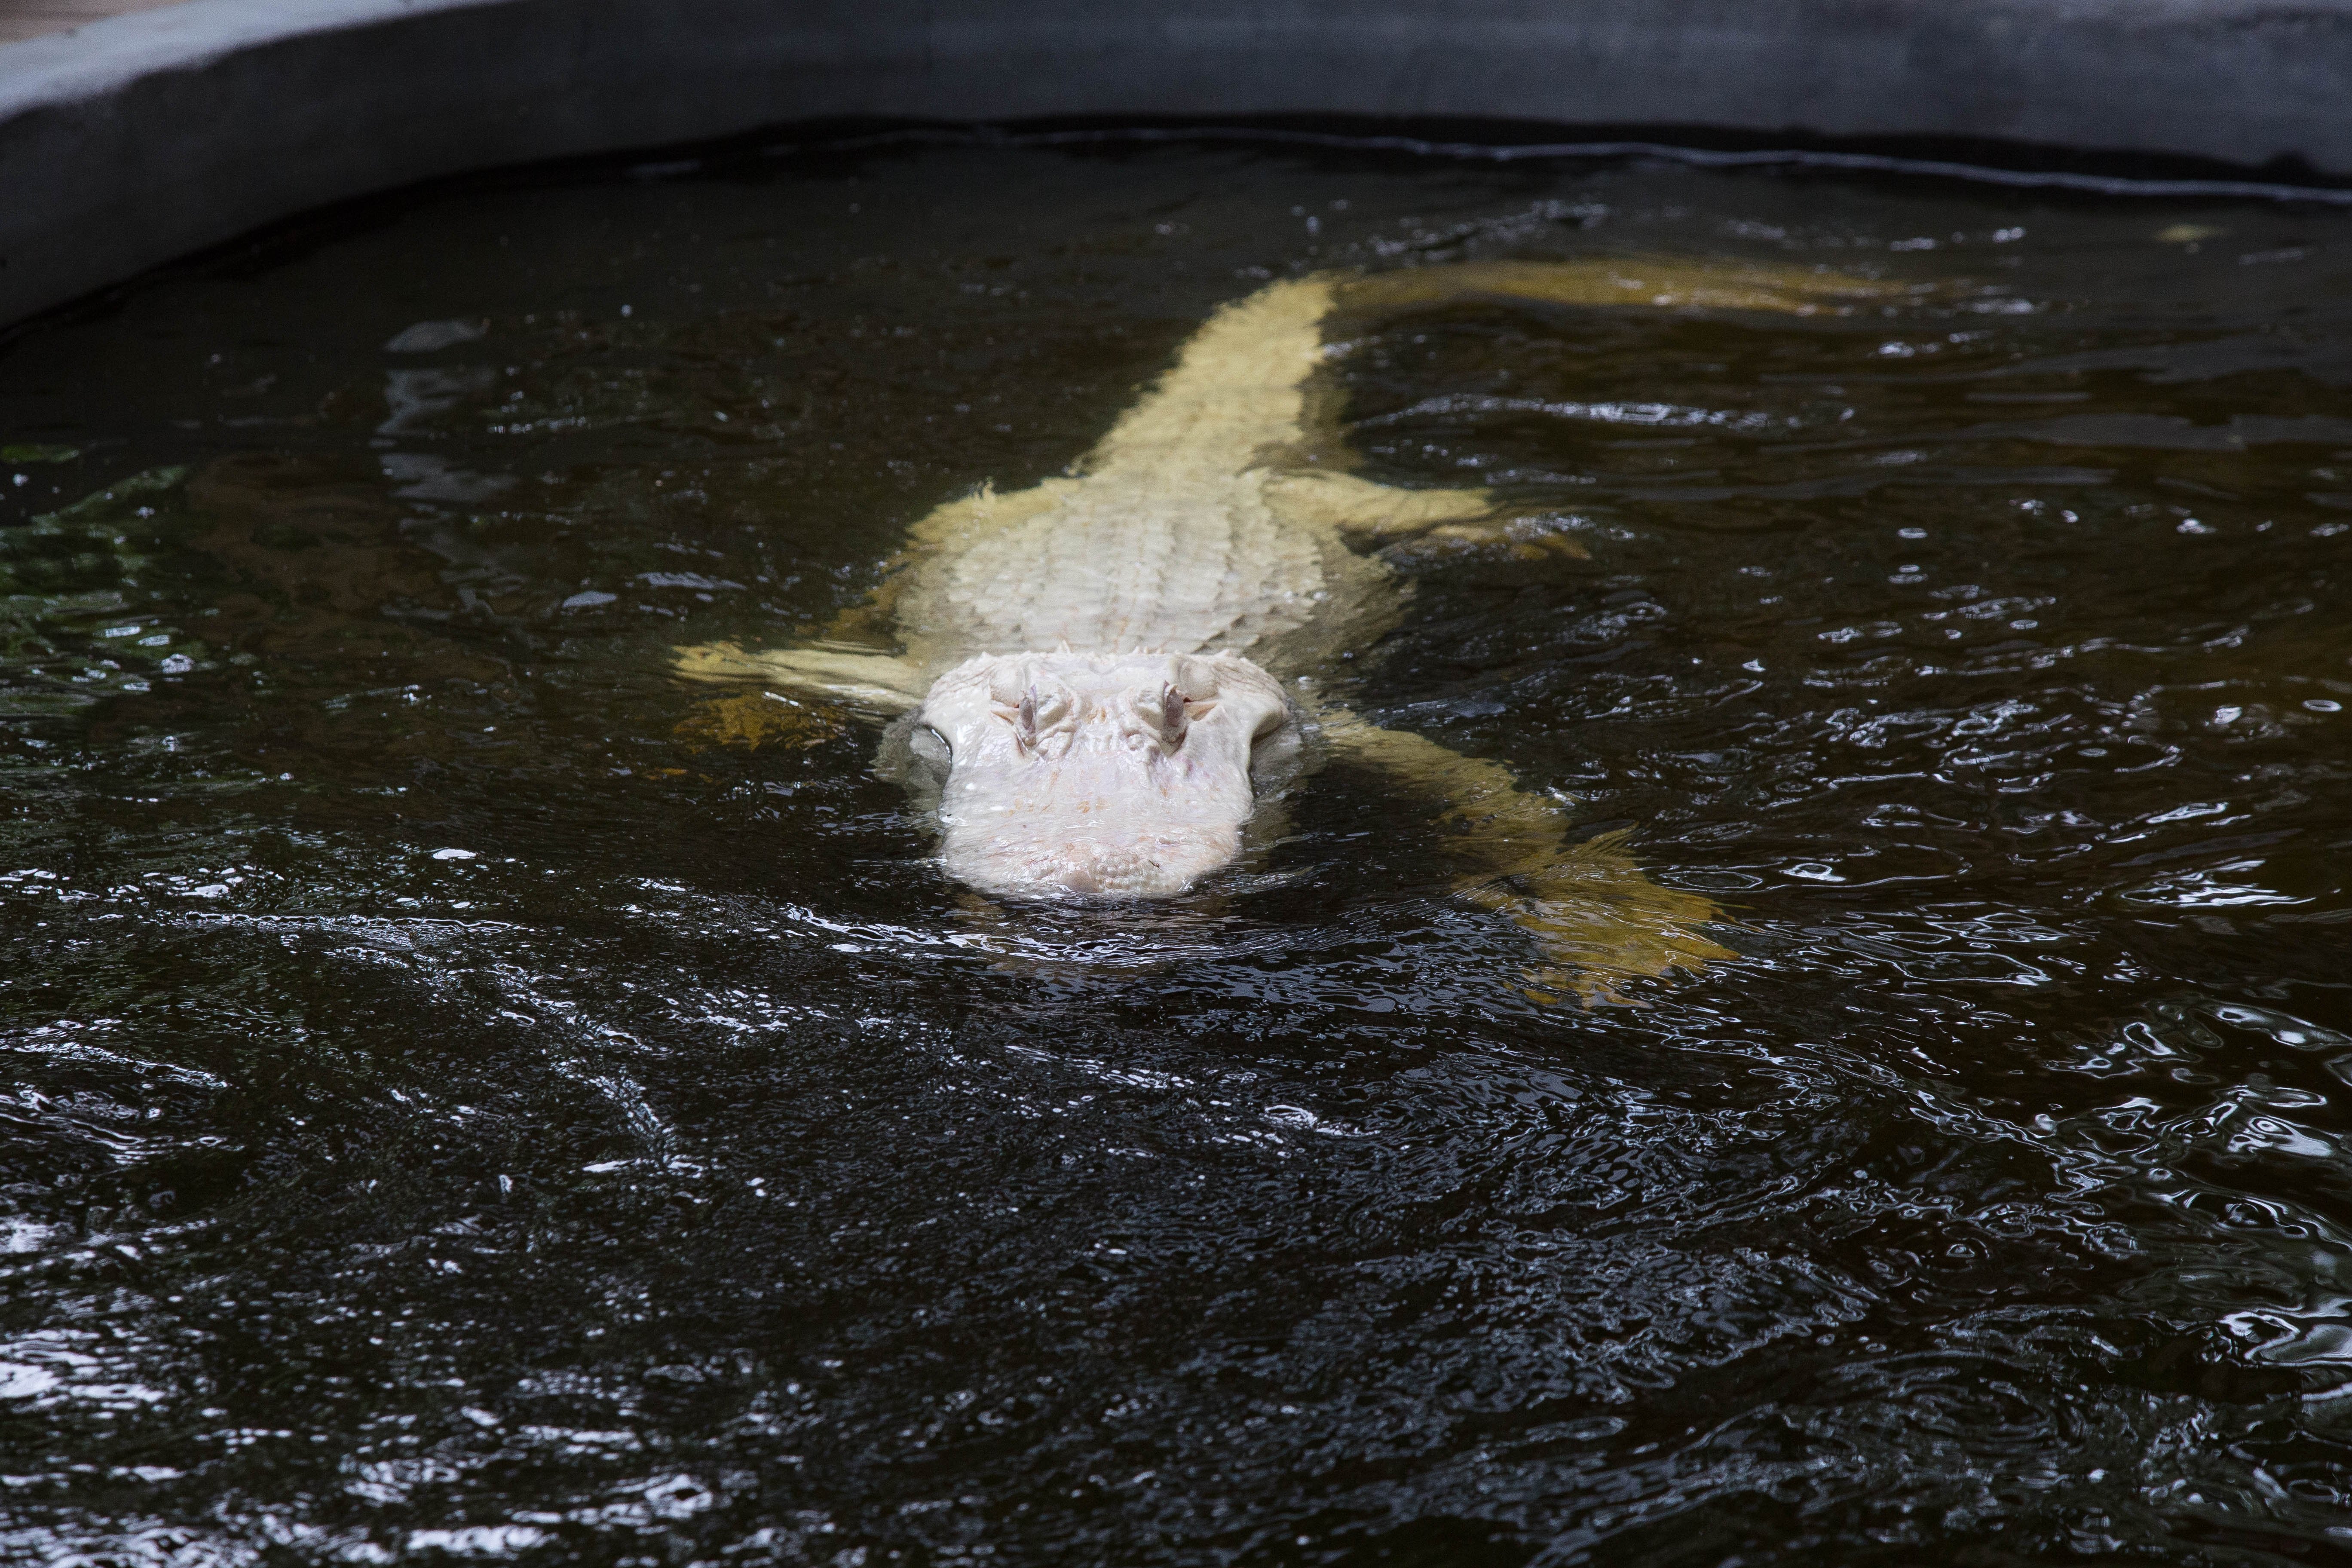 albino alligators at Wild Florida